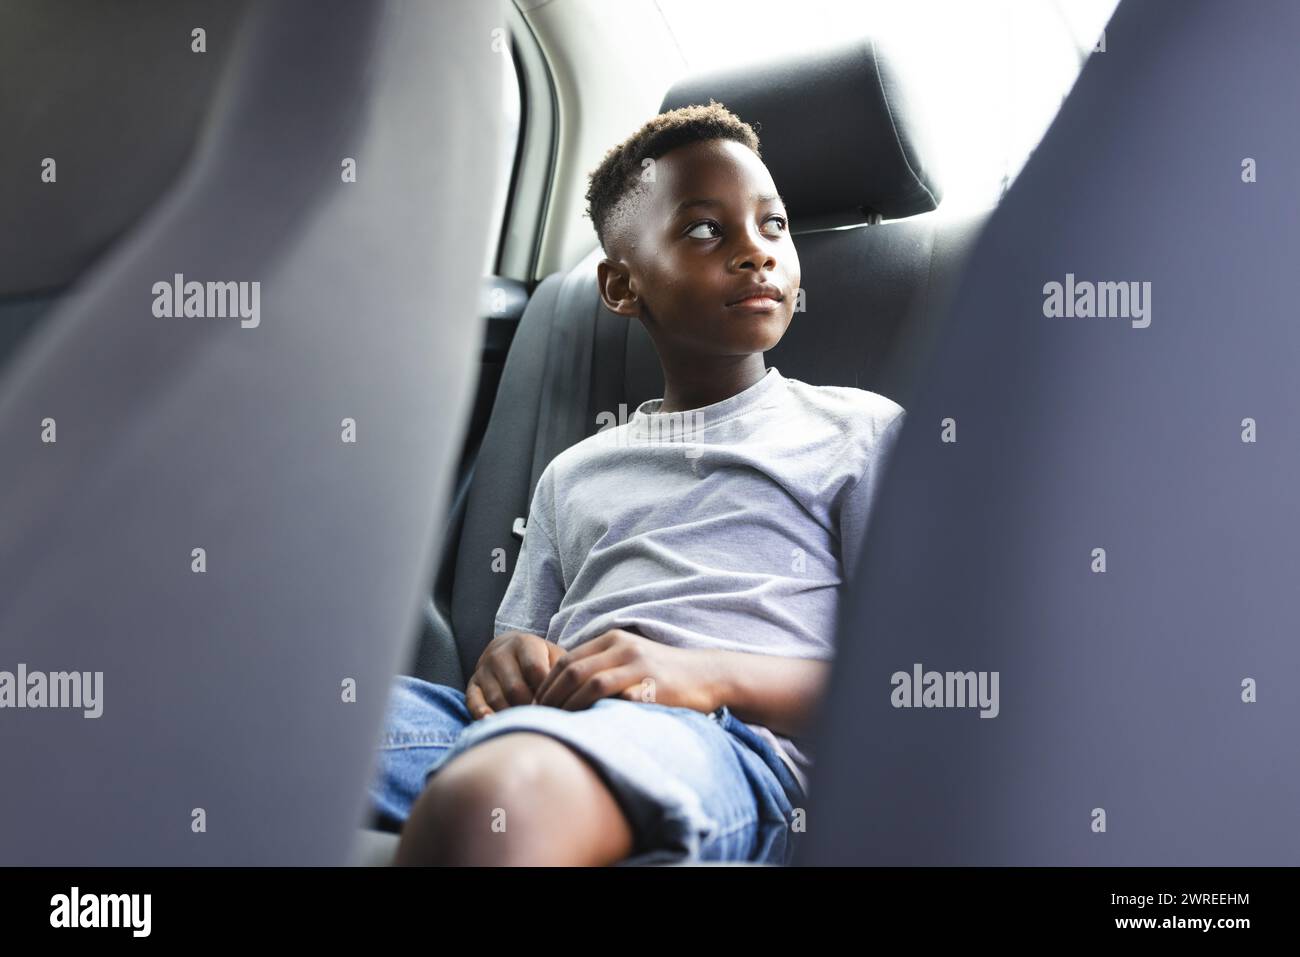 Garçon afro-américain assis dans une voiture, regardant par la fenêtre réfléchie Banque D'Images